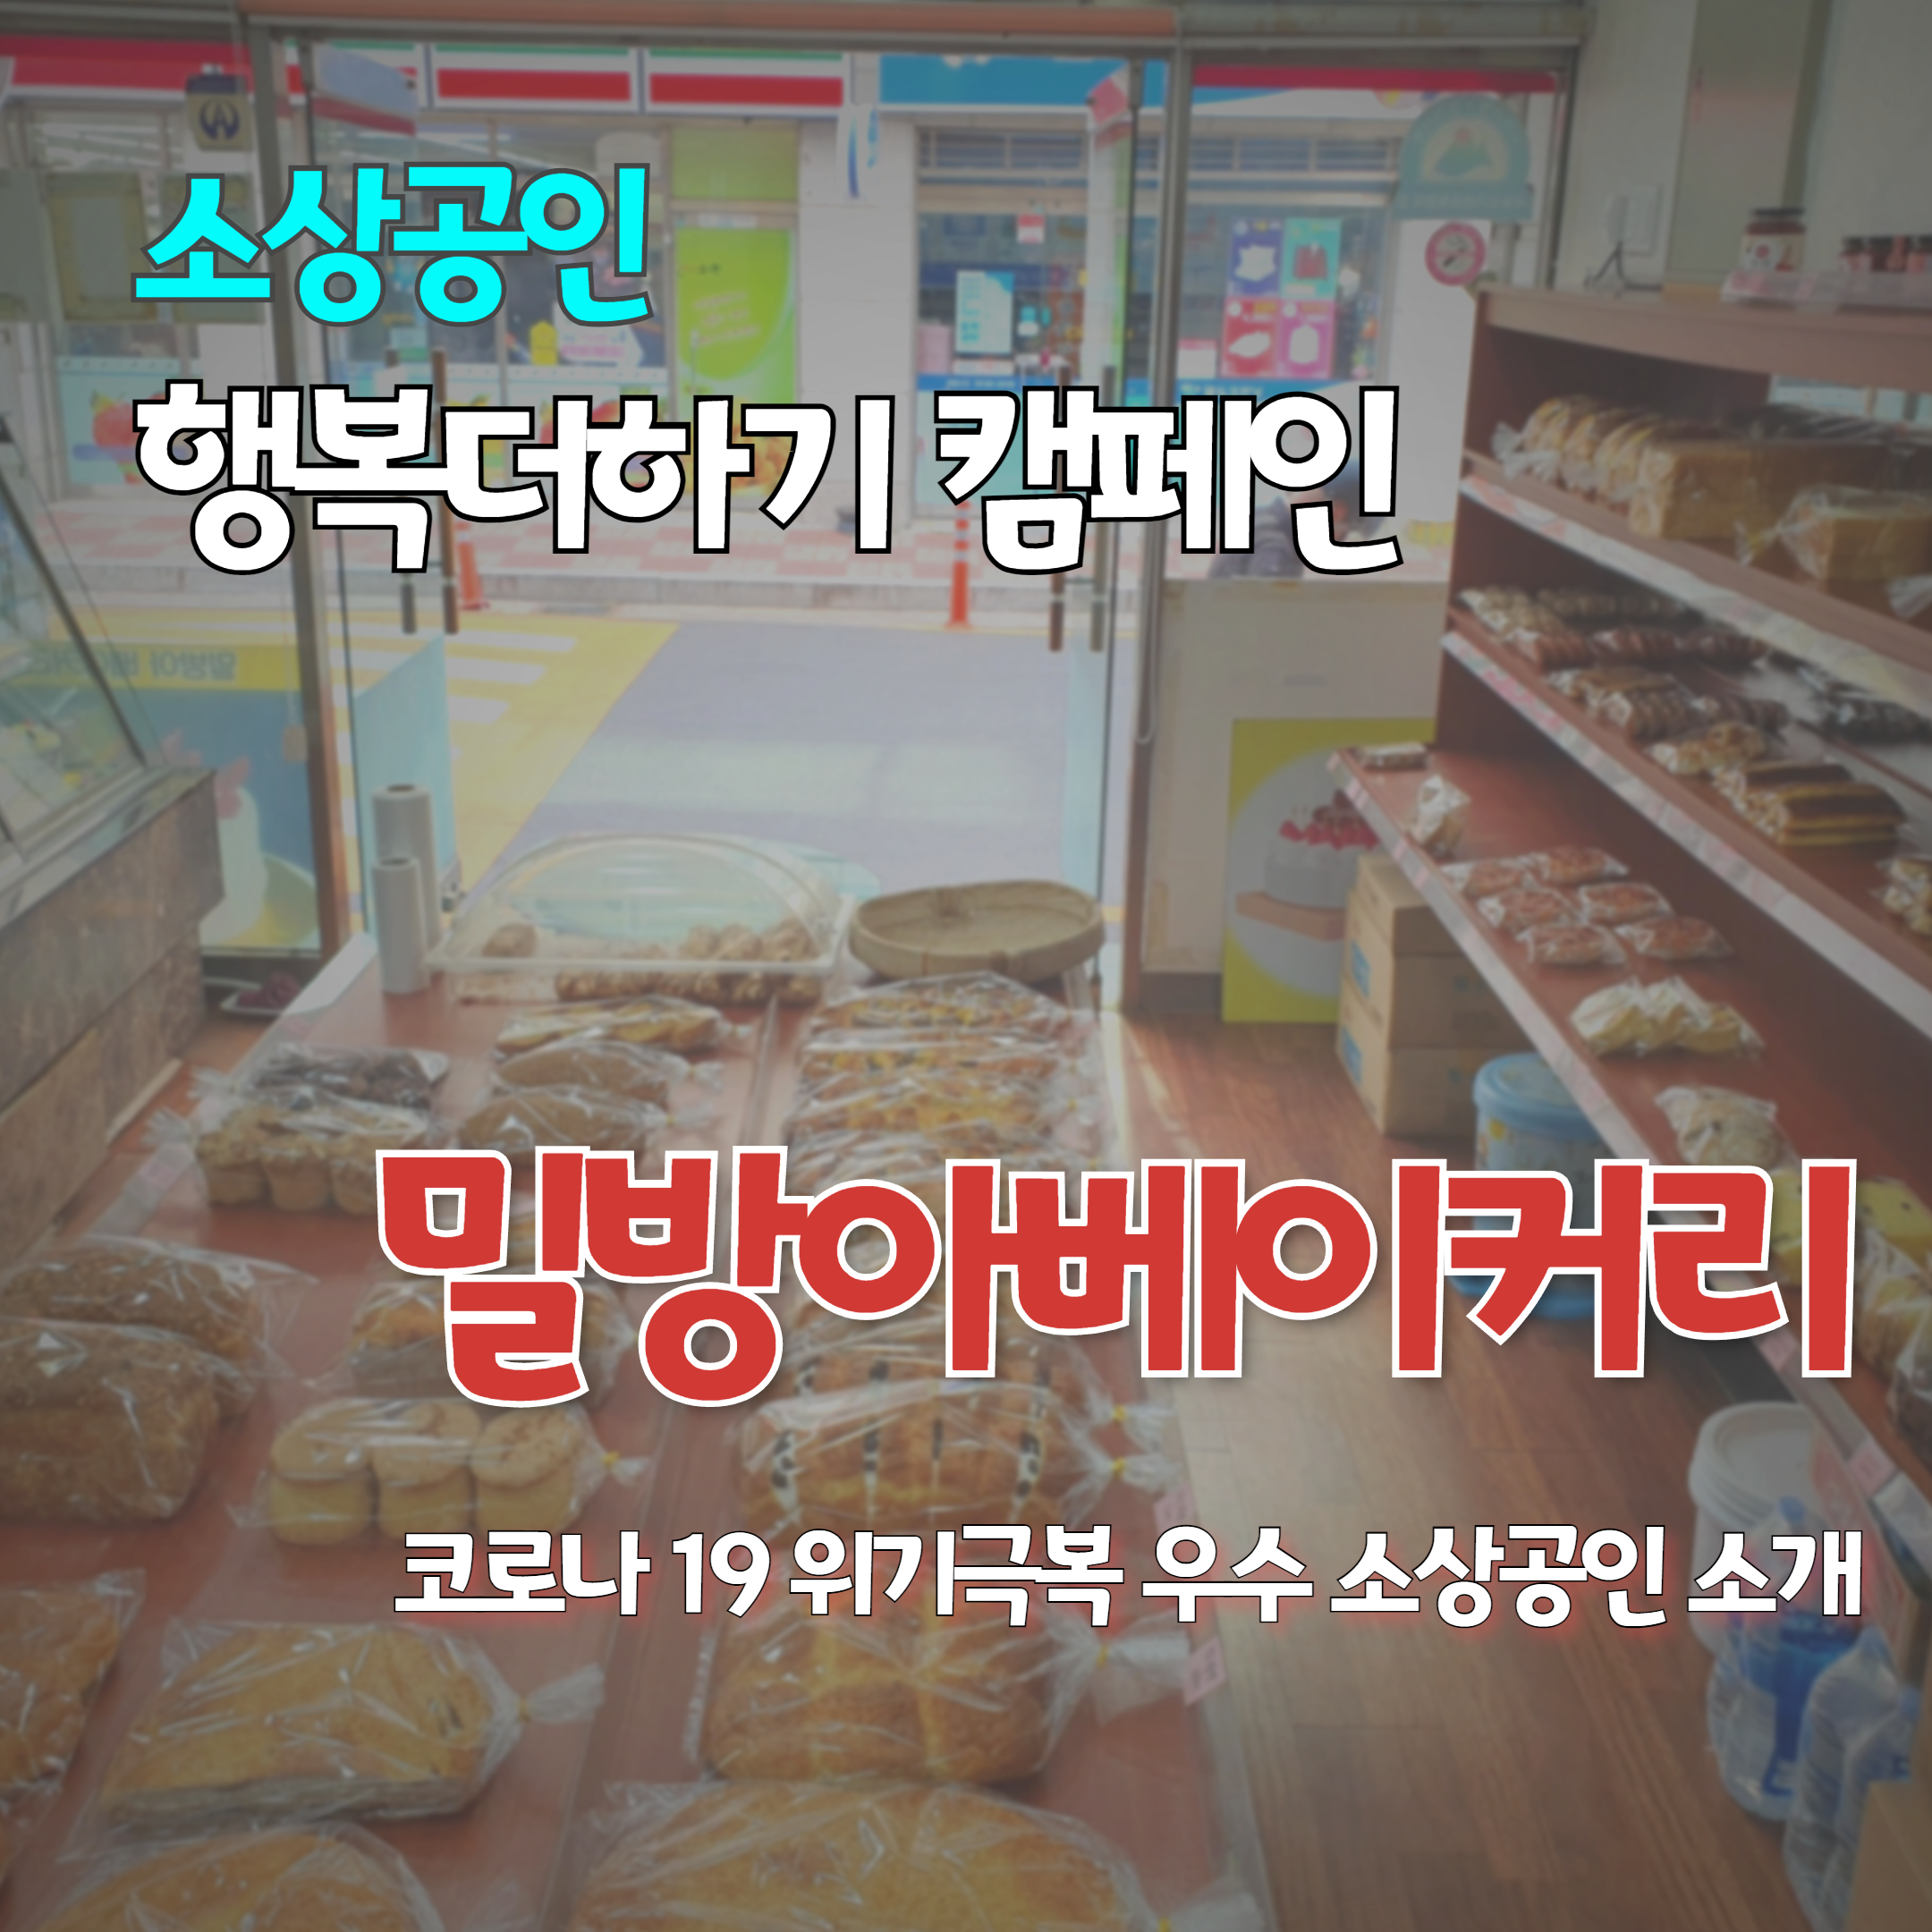 소상공인 행복더하기 캠페인 2호 업체 밀방아제과점(밀방아 베이커리)